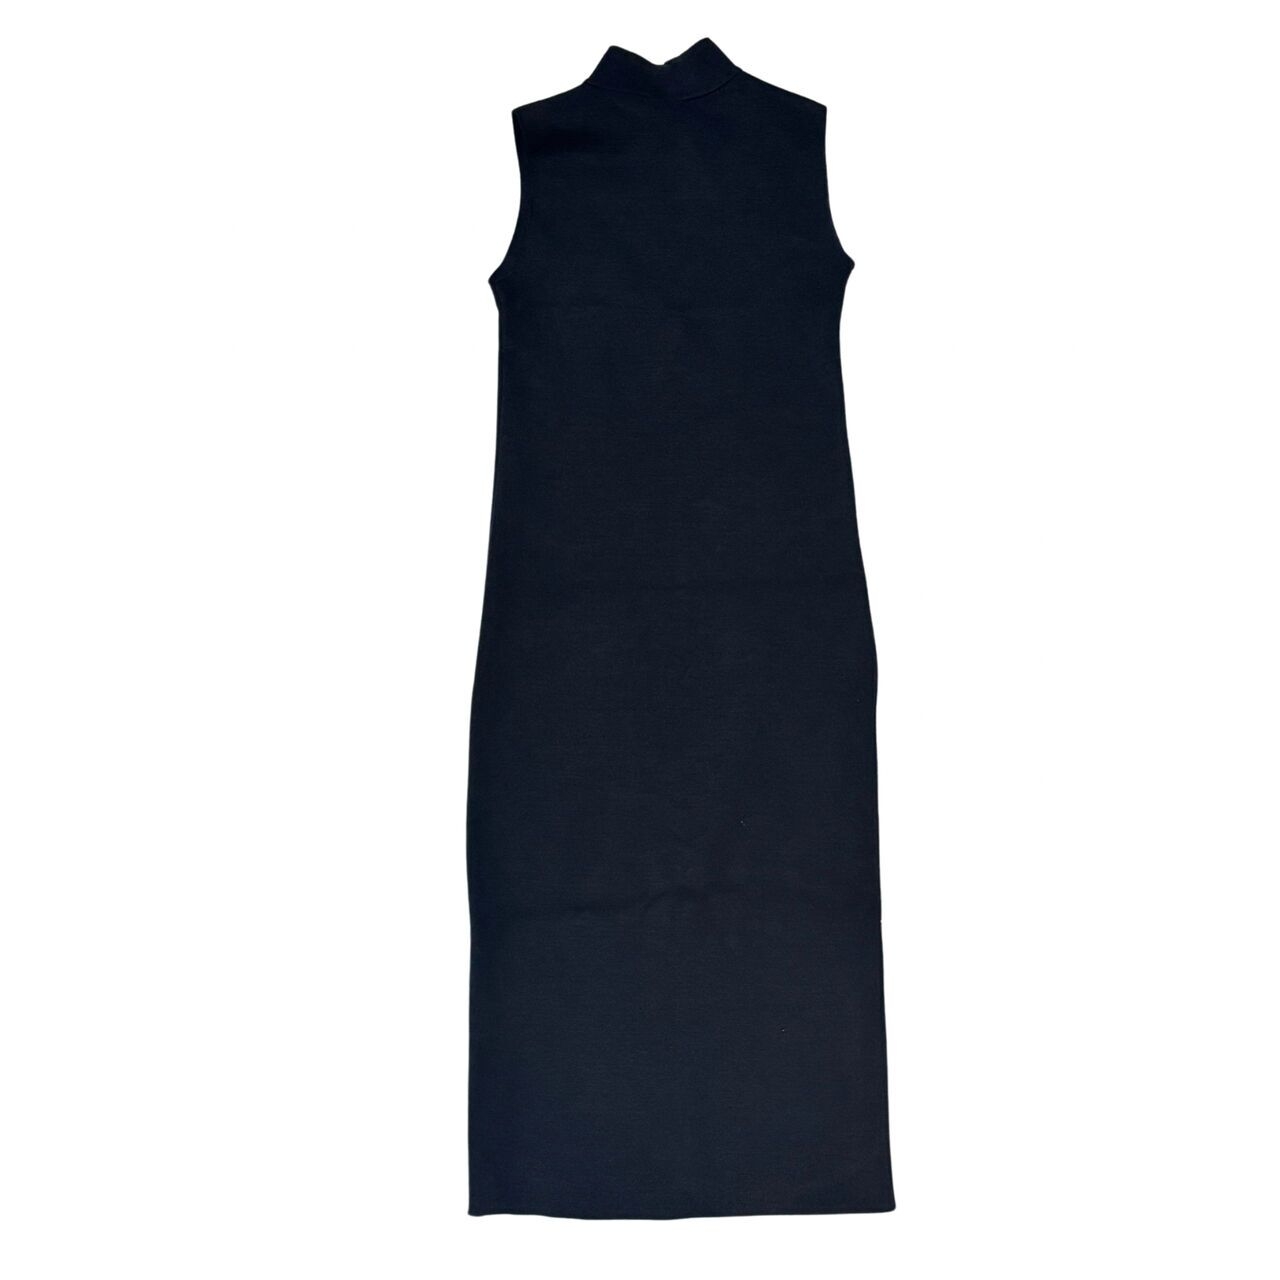 Zara Black Stretch Knit Midi Dress